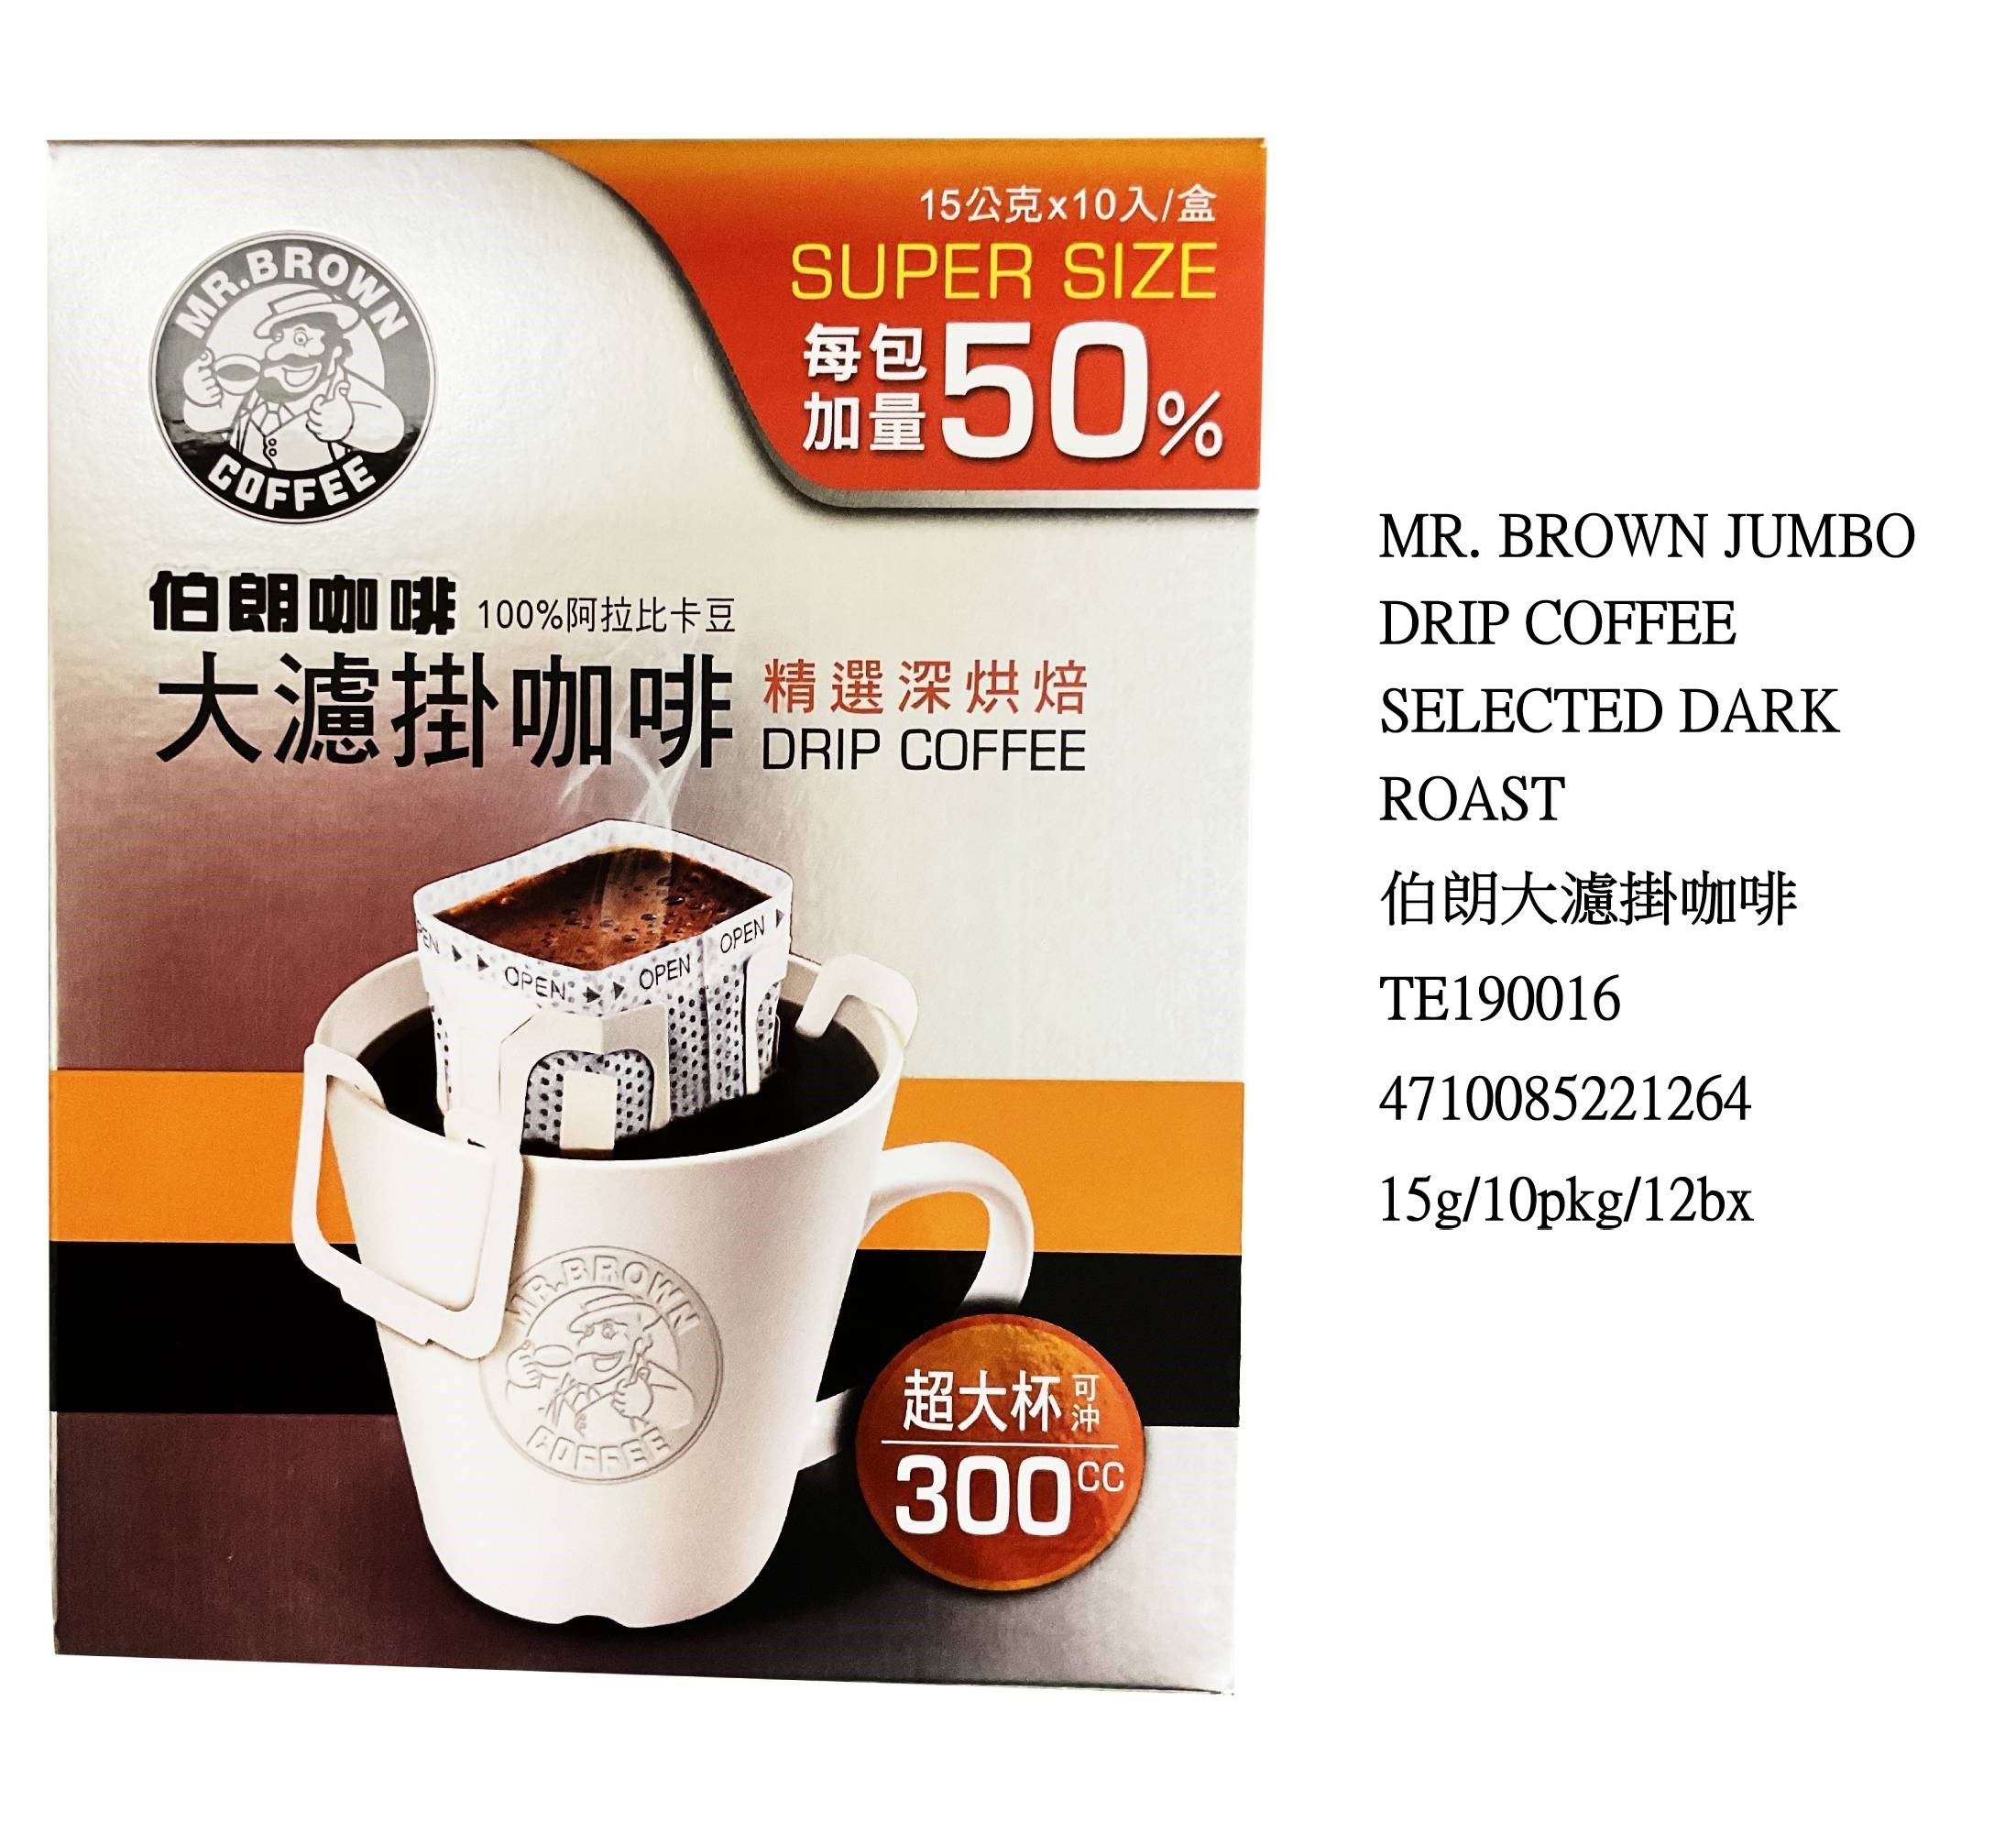 MR. BROWN JUMBO DRIP COFFEE SELECTED DARK ROAST TE190016